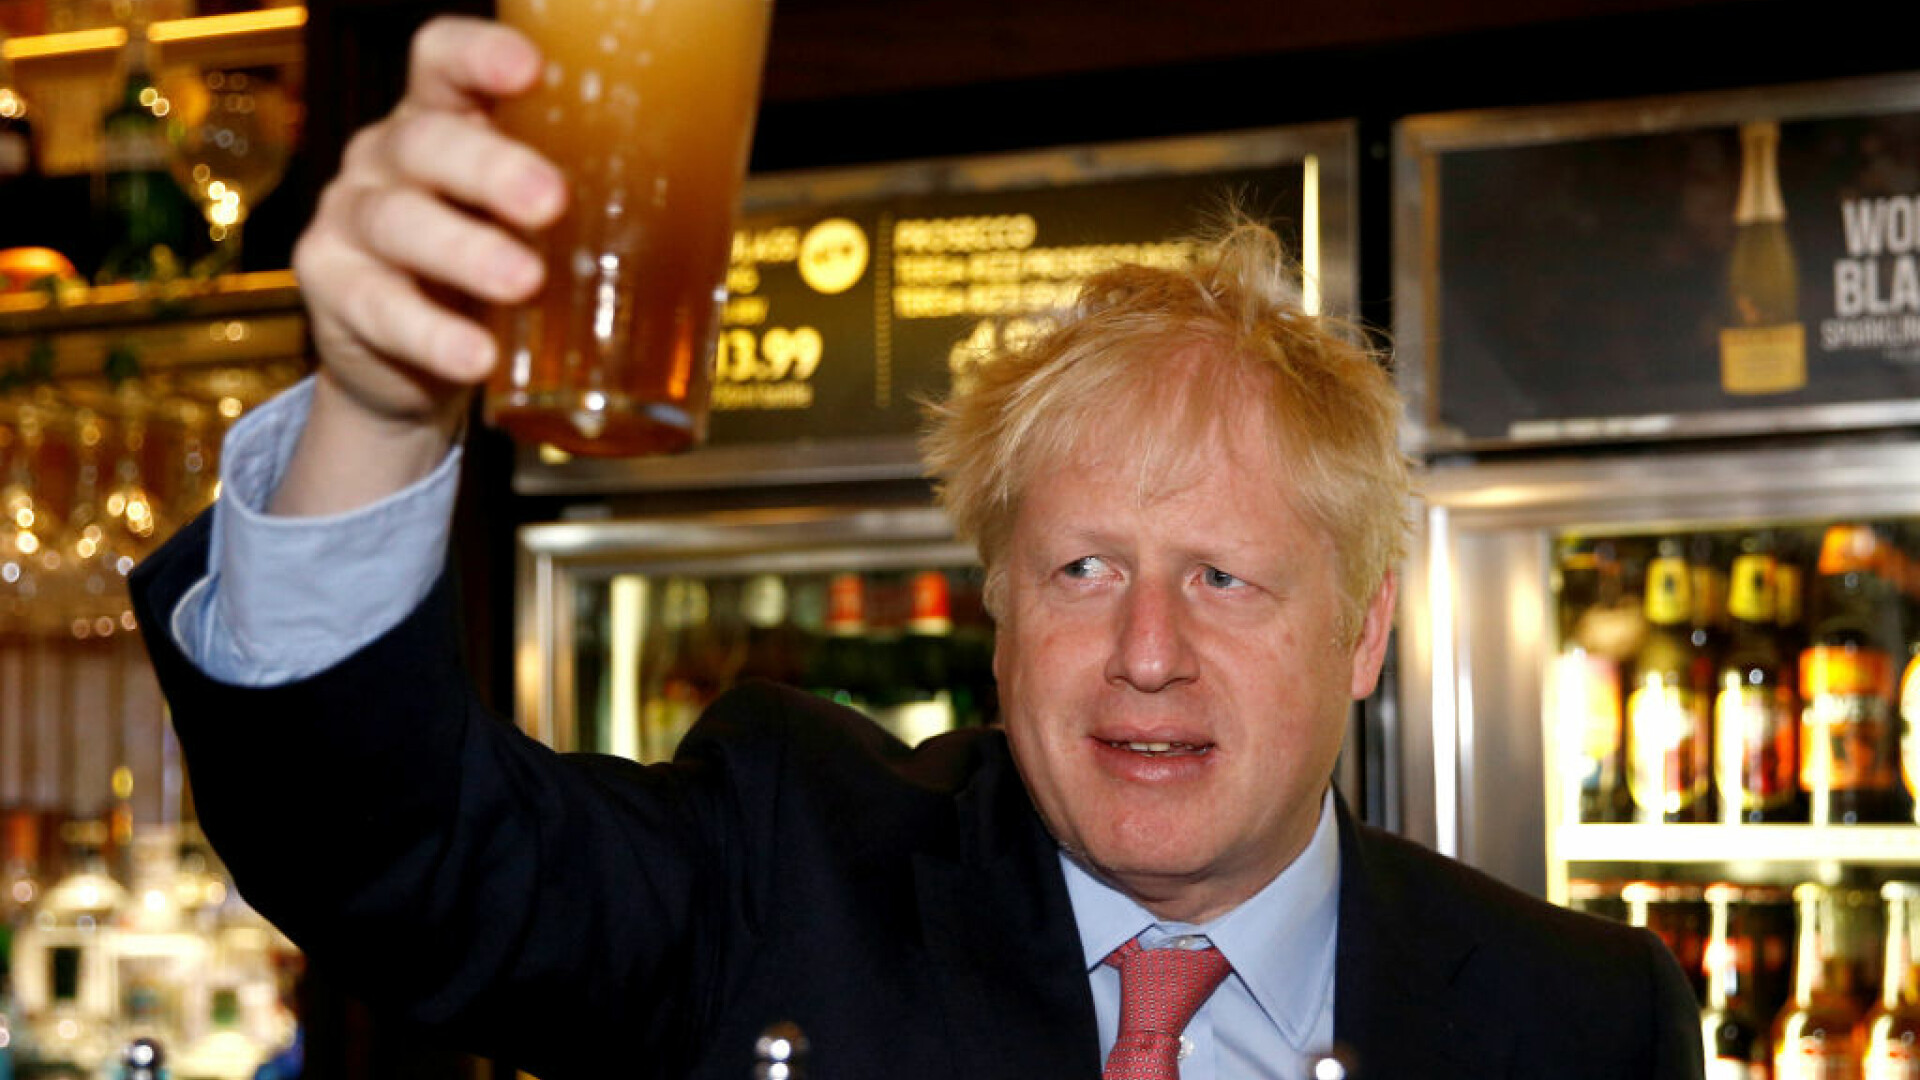 Anglia se pregătește să se îmbete, după 4 luni de caratină. Boris Johnson însuși va merge în pub să bea o bere